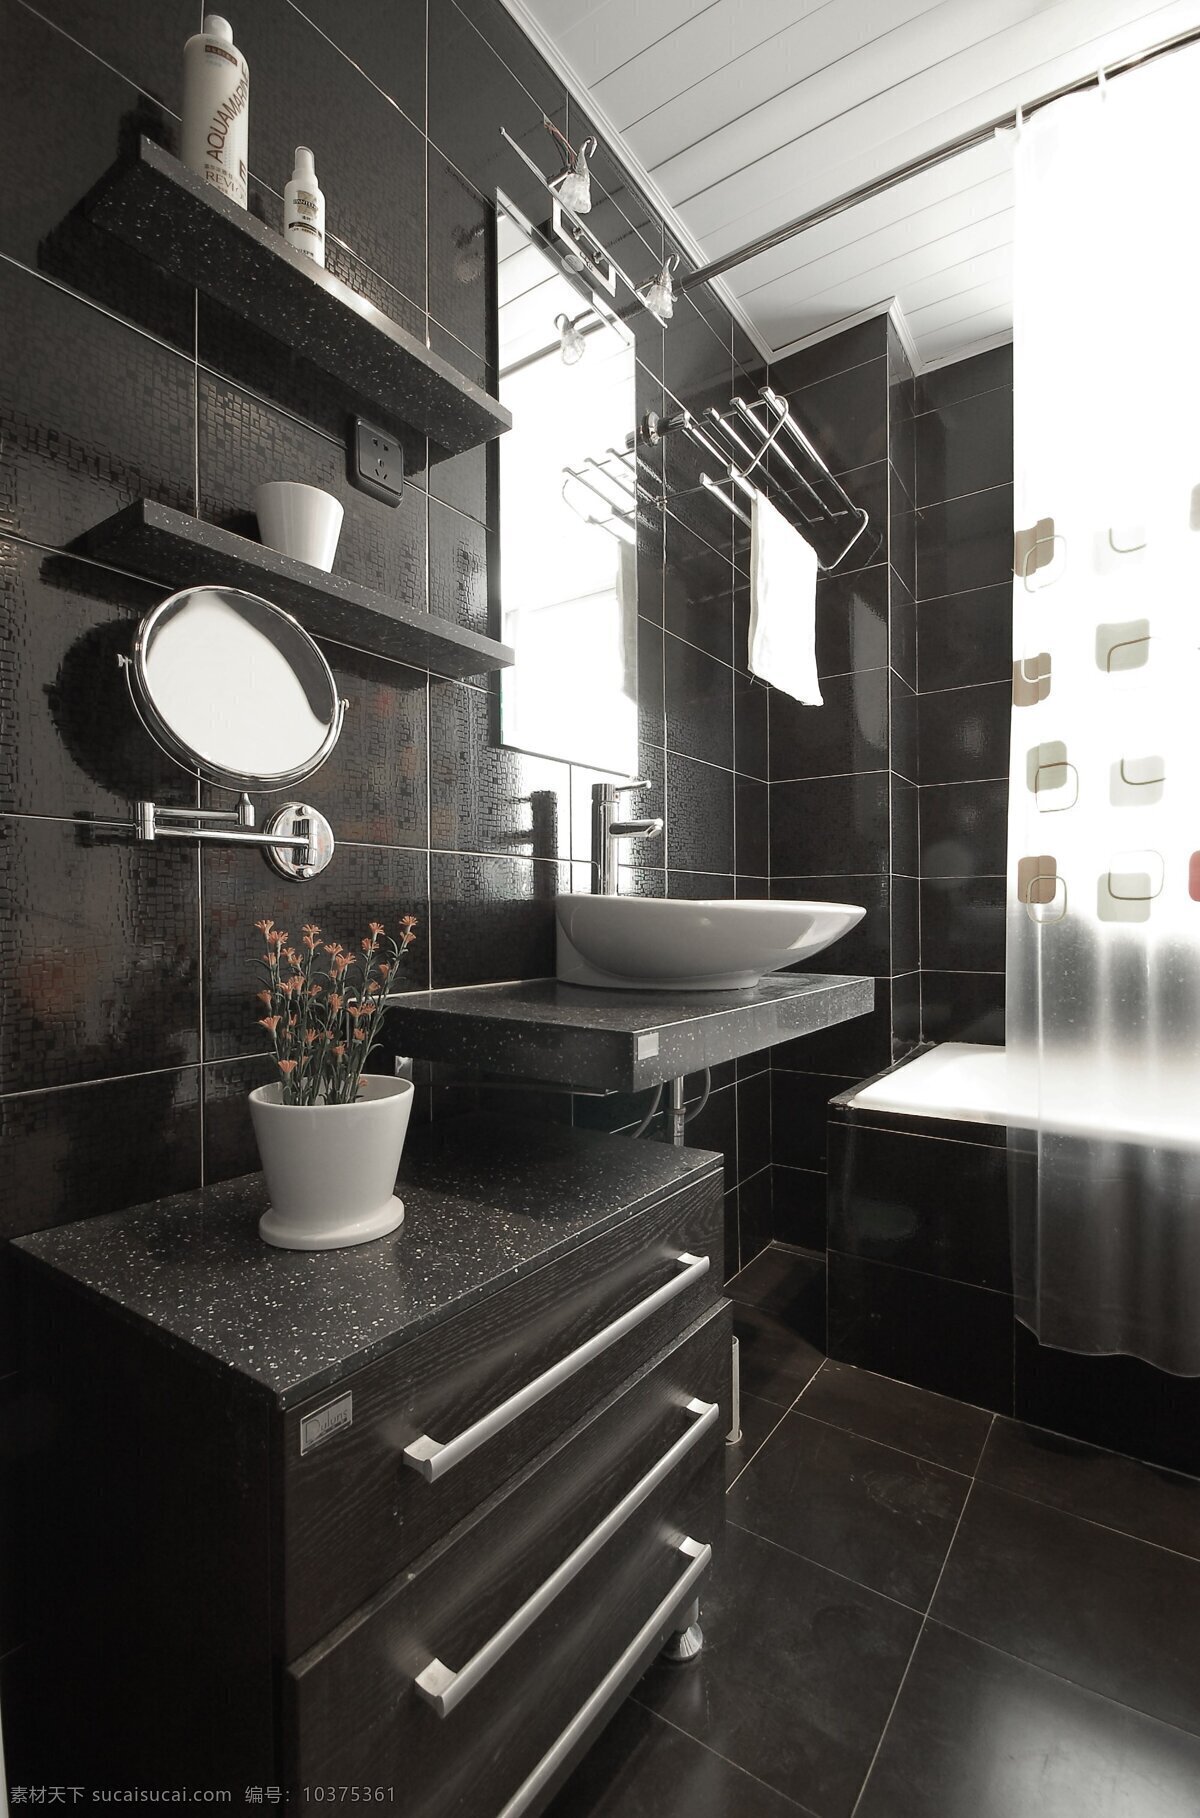 古朴 卫生间 效果图 3d贴图 古朴卫生间 高清 渲染 图 3d 装饰素材 室内设计